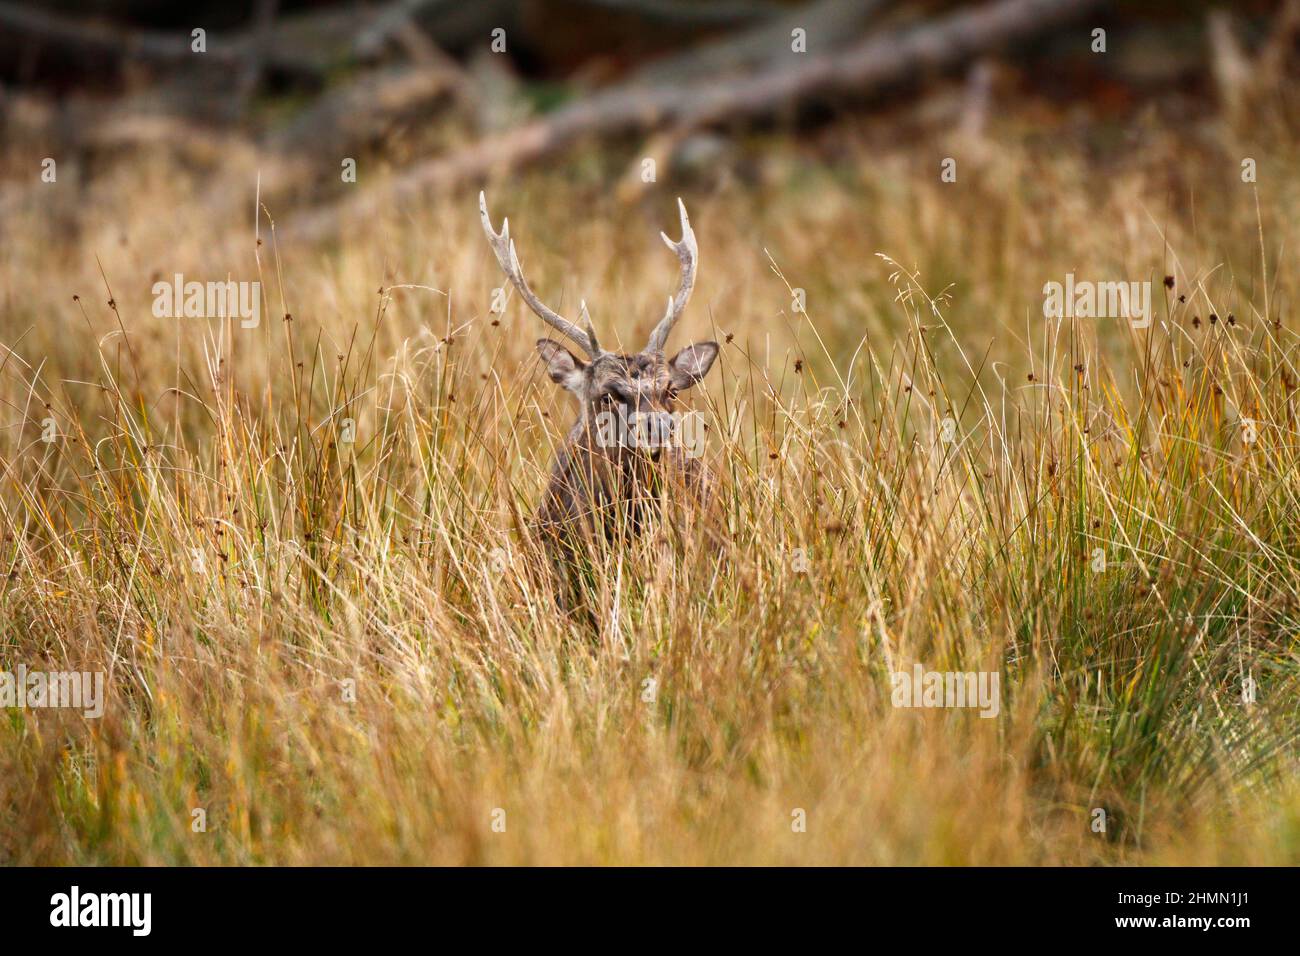 Sika deer, Tame sika deer, Tame deer (Cervus nippon), male stands between high grass, Germany Stock Photo